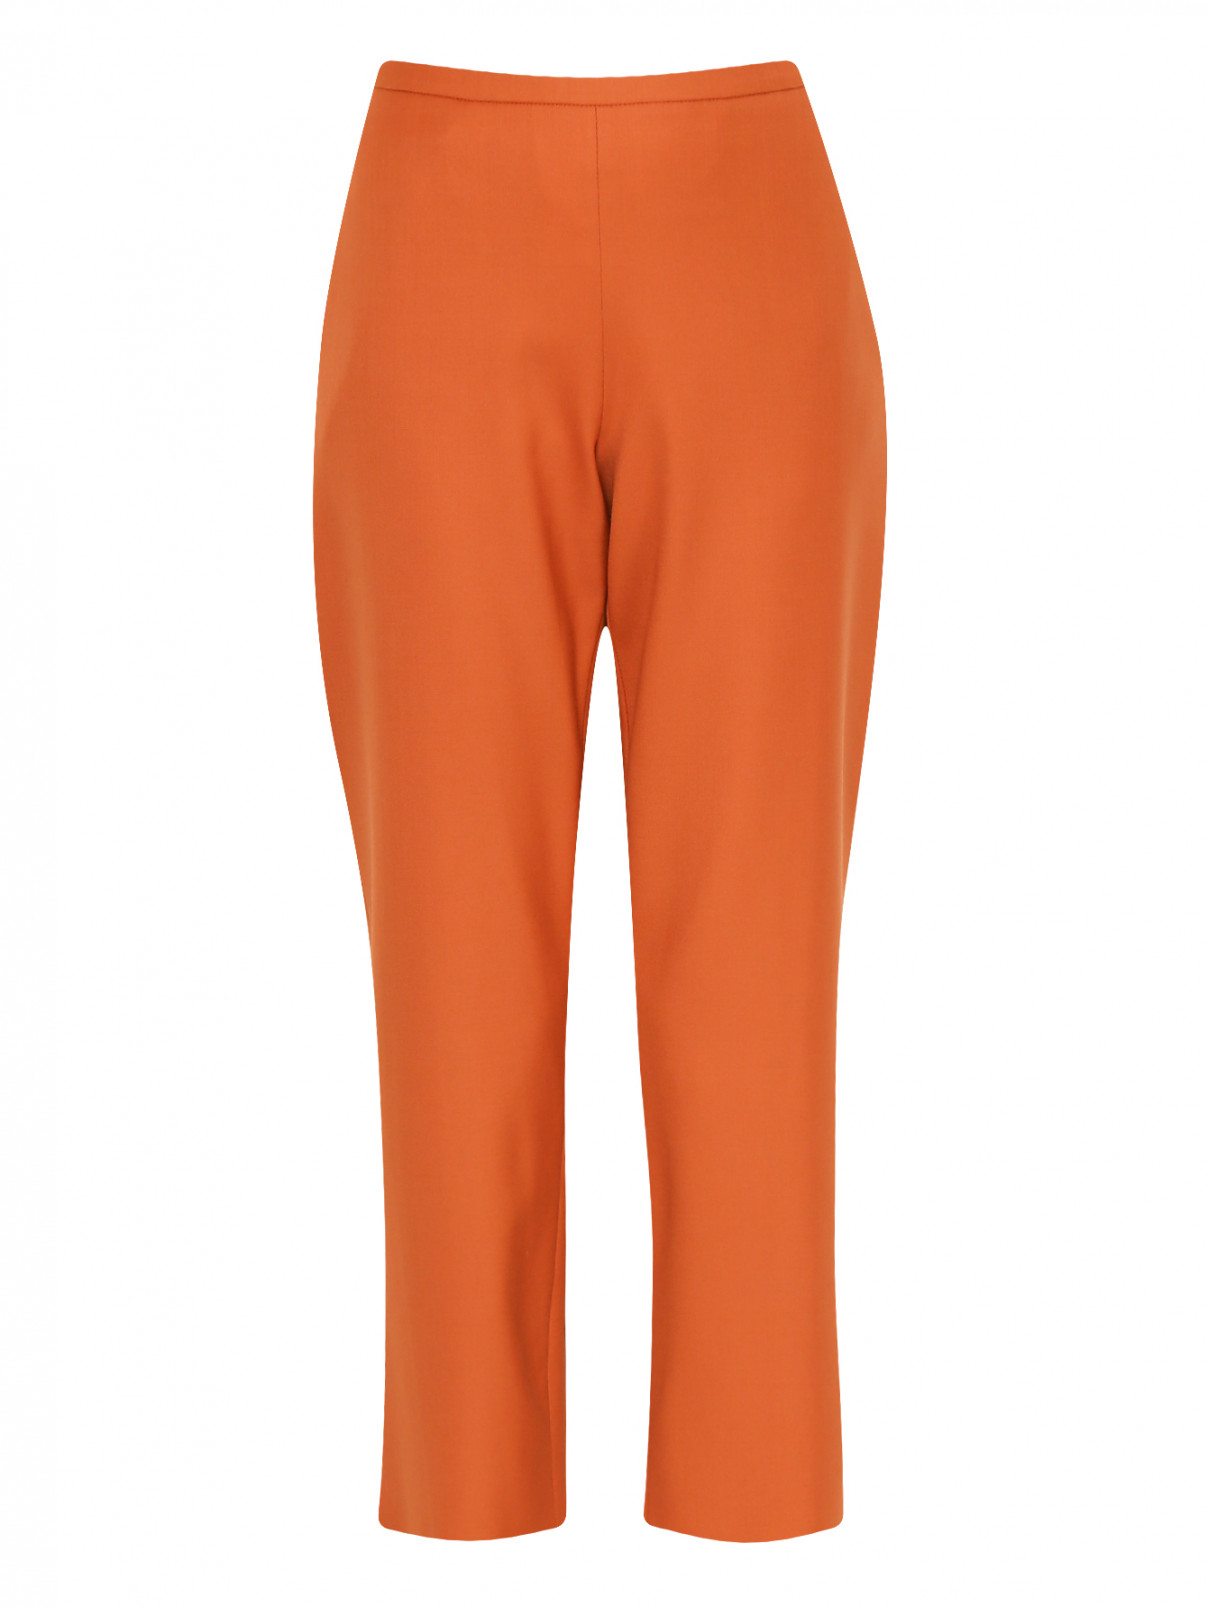 Укороченные брюки из шерсти Antonio Marras  –  Общий вид  – Цвет:  Оранжевый